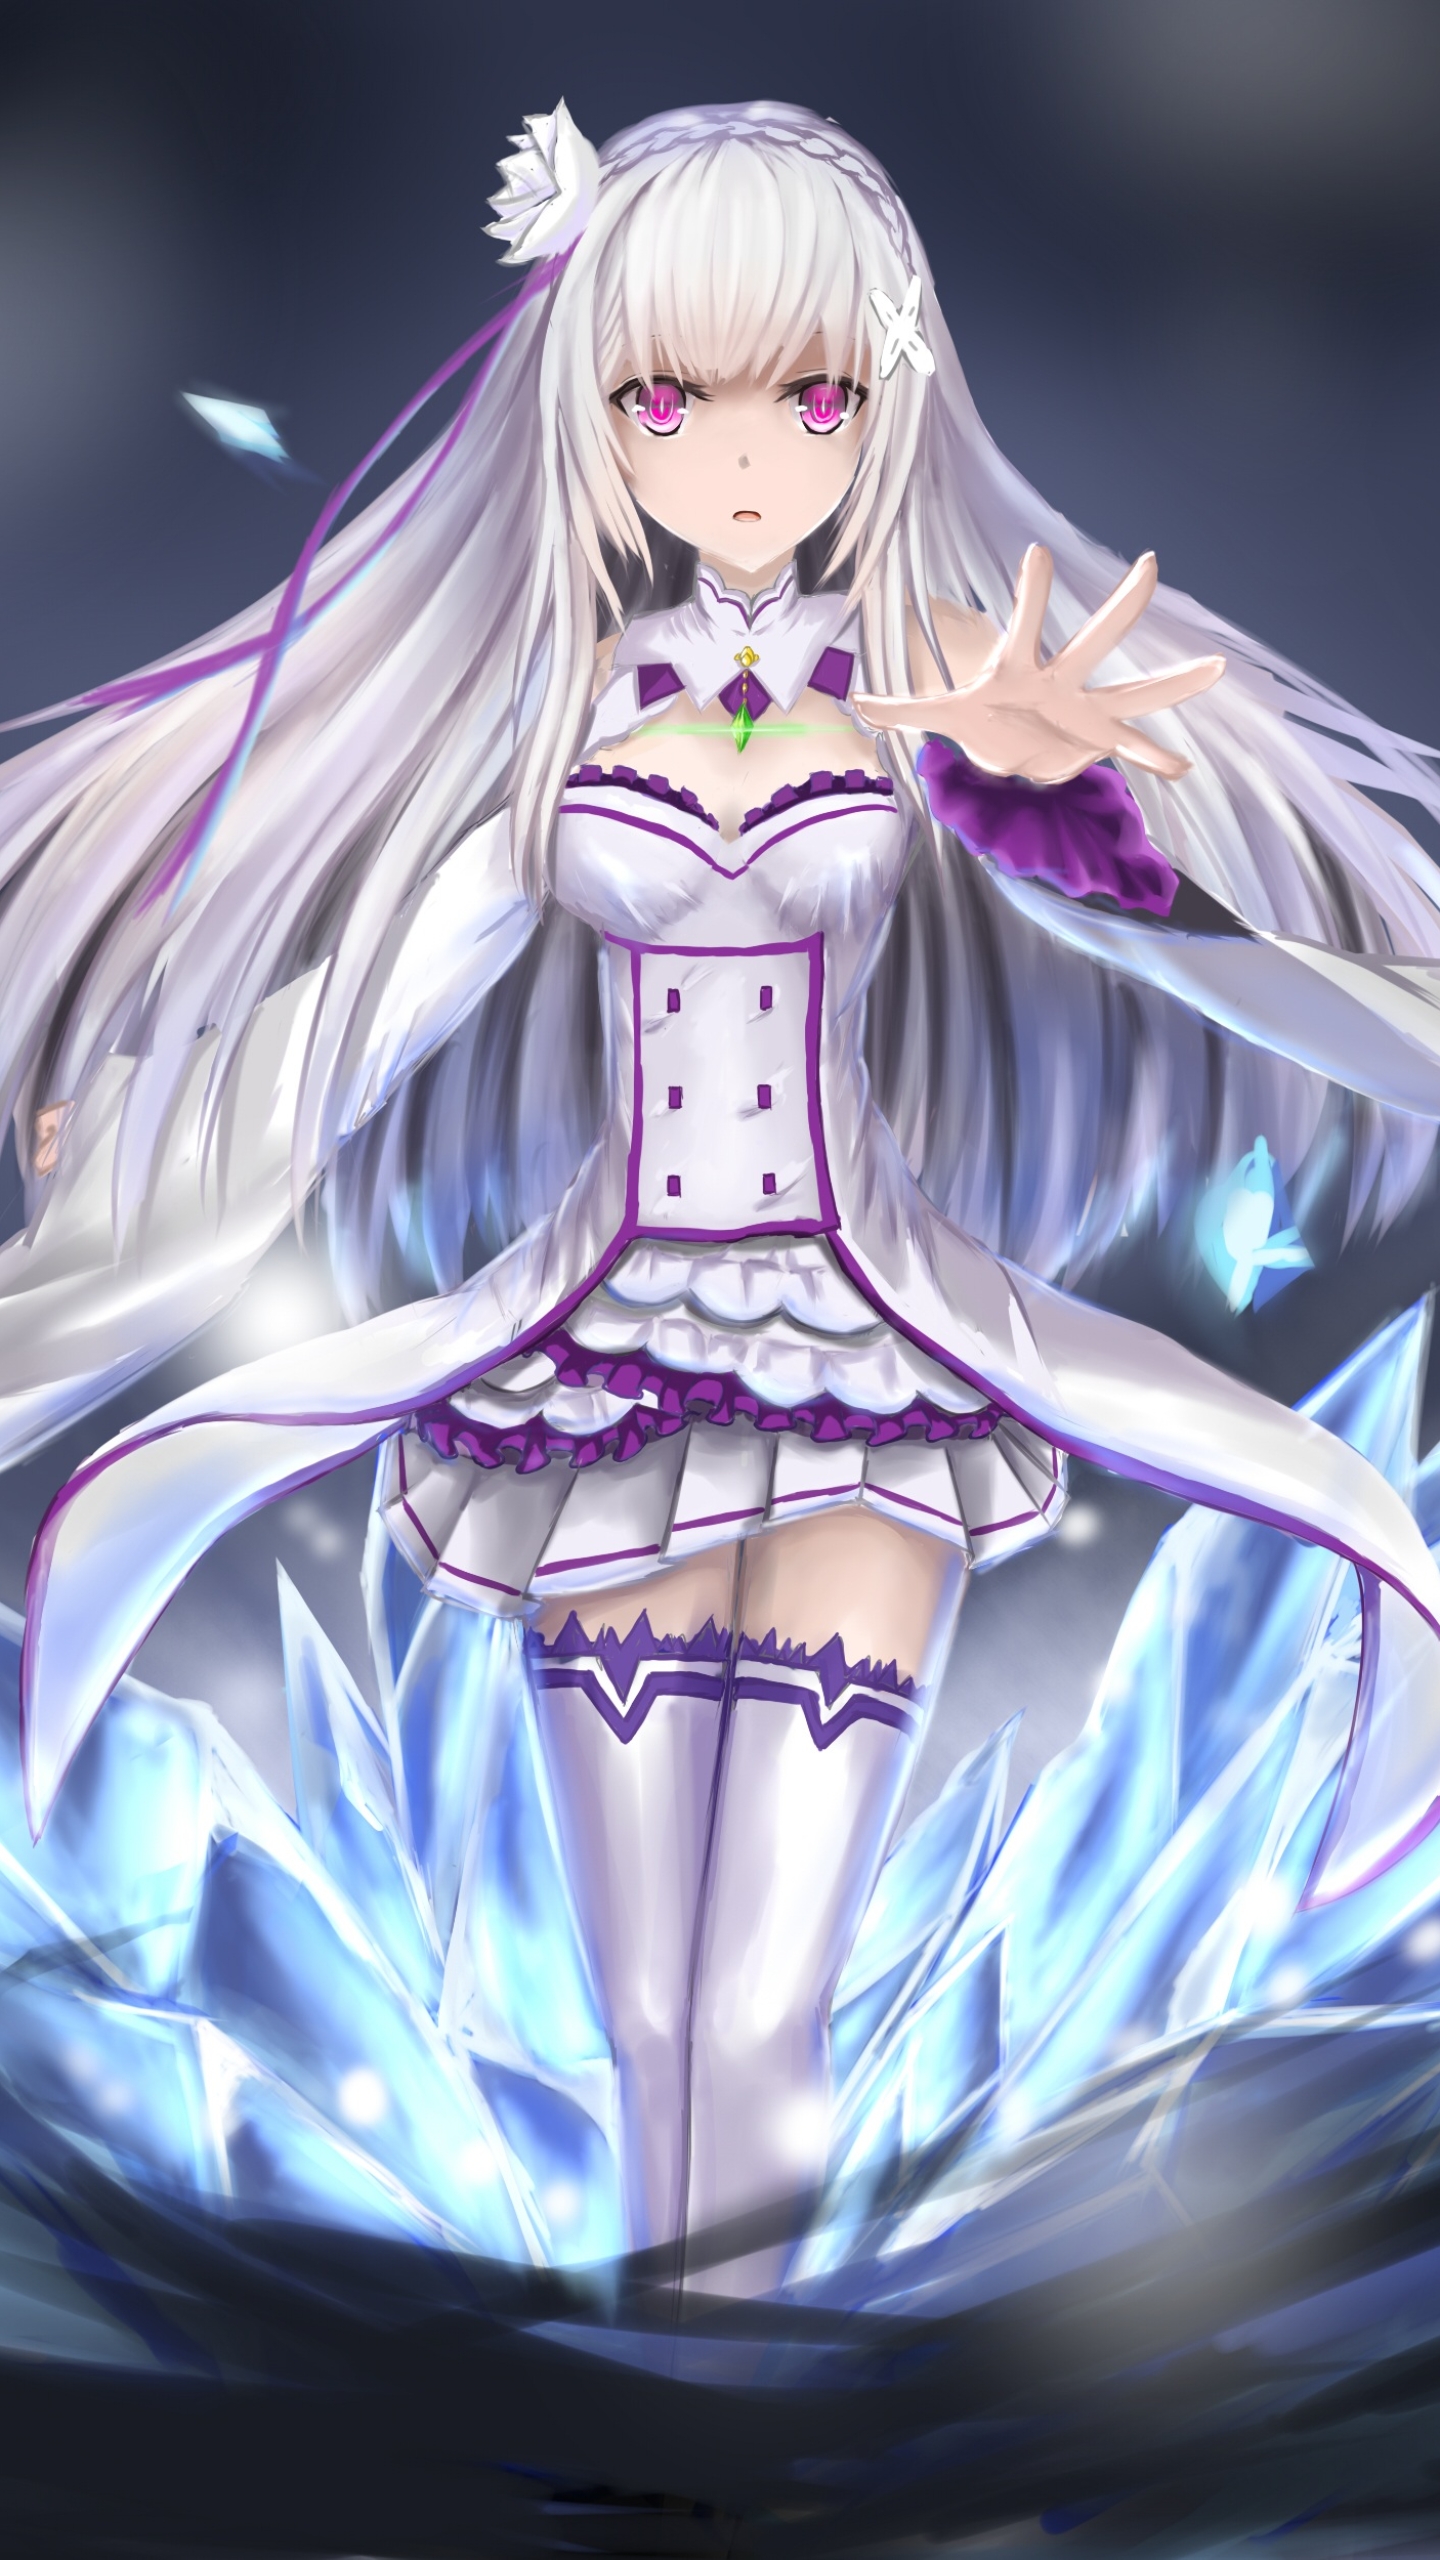 Emilia - Re:ZERO by 灰烬之灵